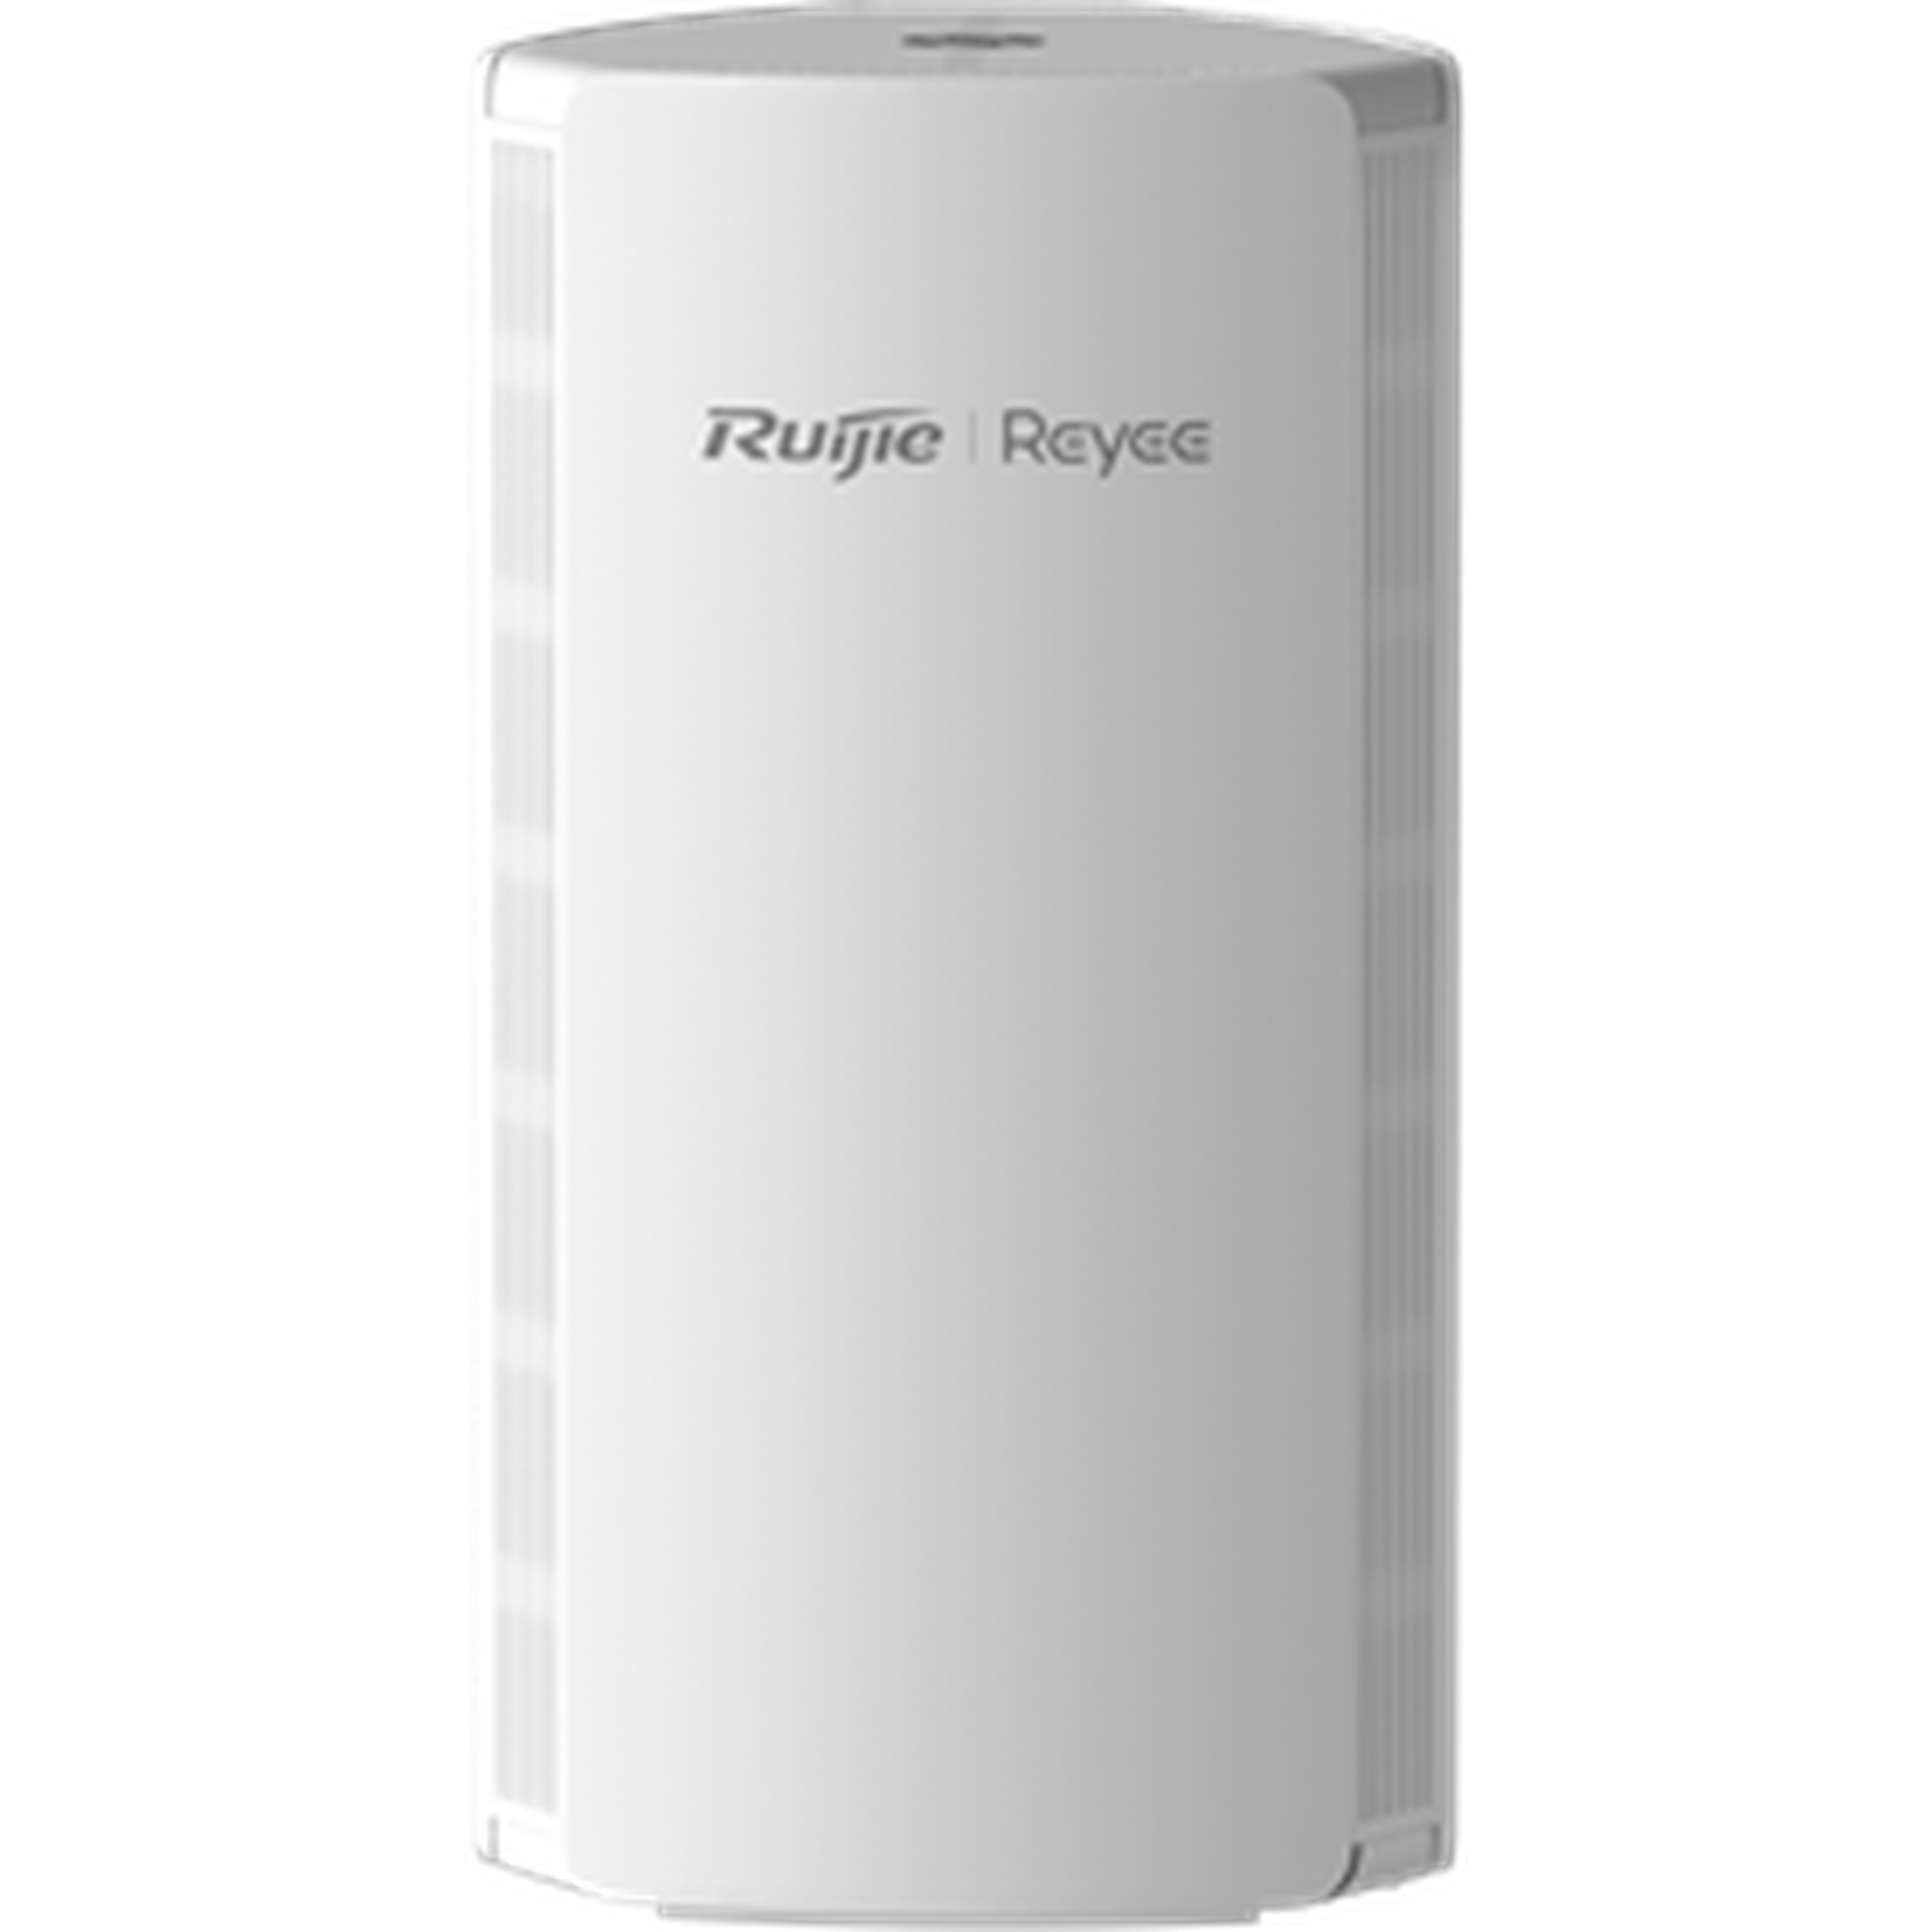 Rg-M18 Ruijie Reyee Wifi6 Ax1800 Mesh Router - 1 Pack-Ruijie Wireless Router-Ruijie-Star Light Kuwait